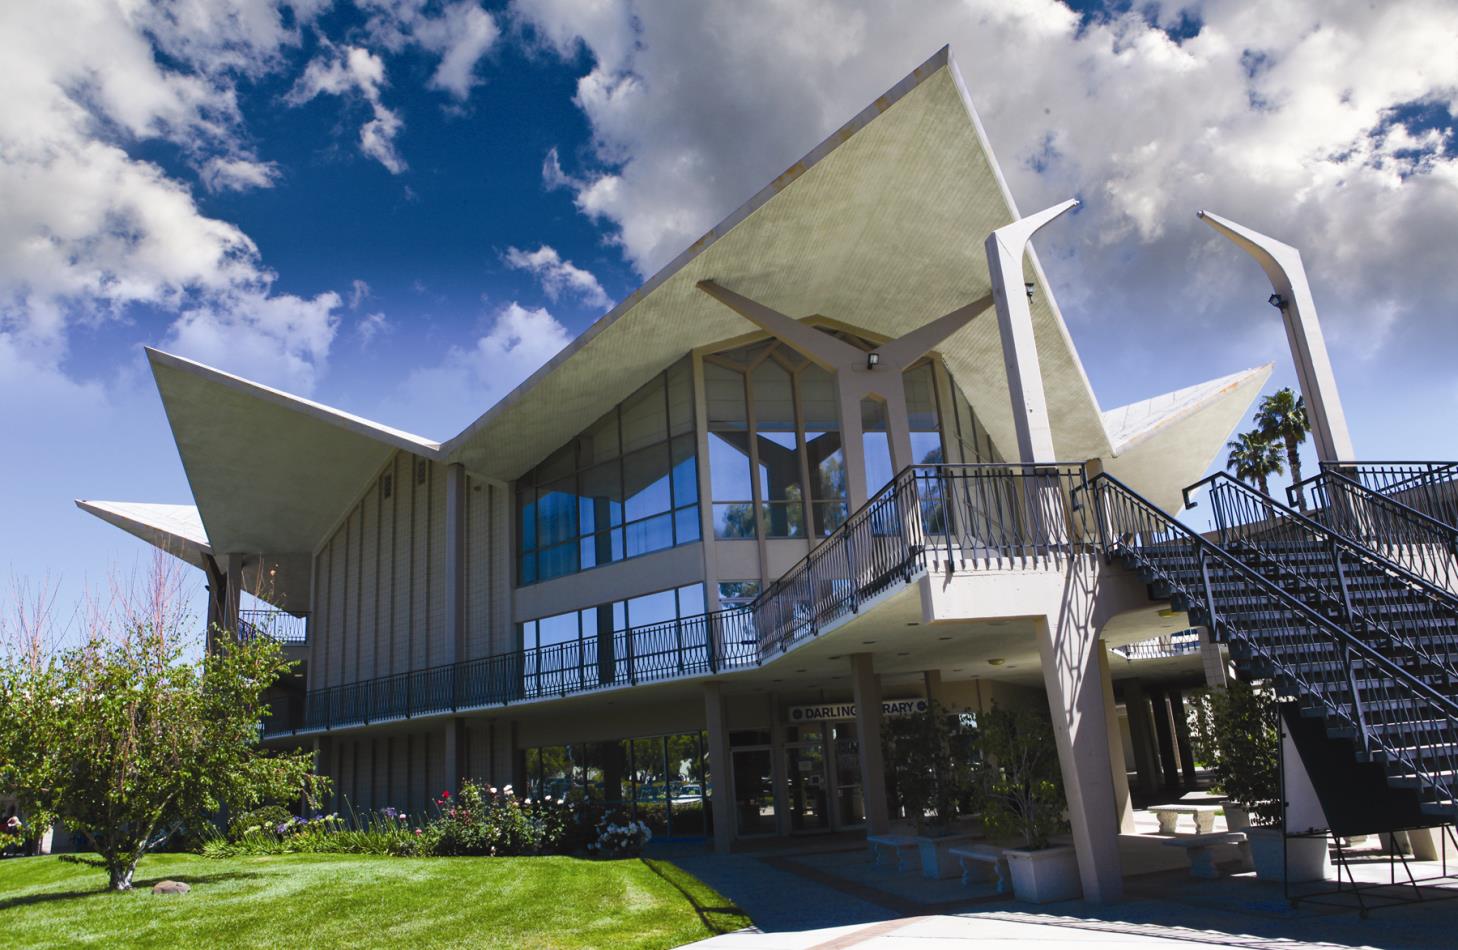 Pavillon principal de l'Université Hope International, à Fullerton, Californie. Par Slcoats — Travail personnel, CC BY 3.0,